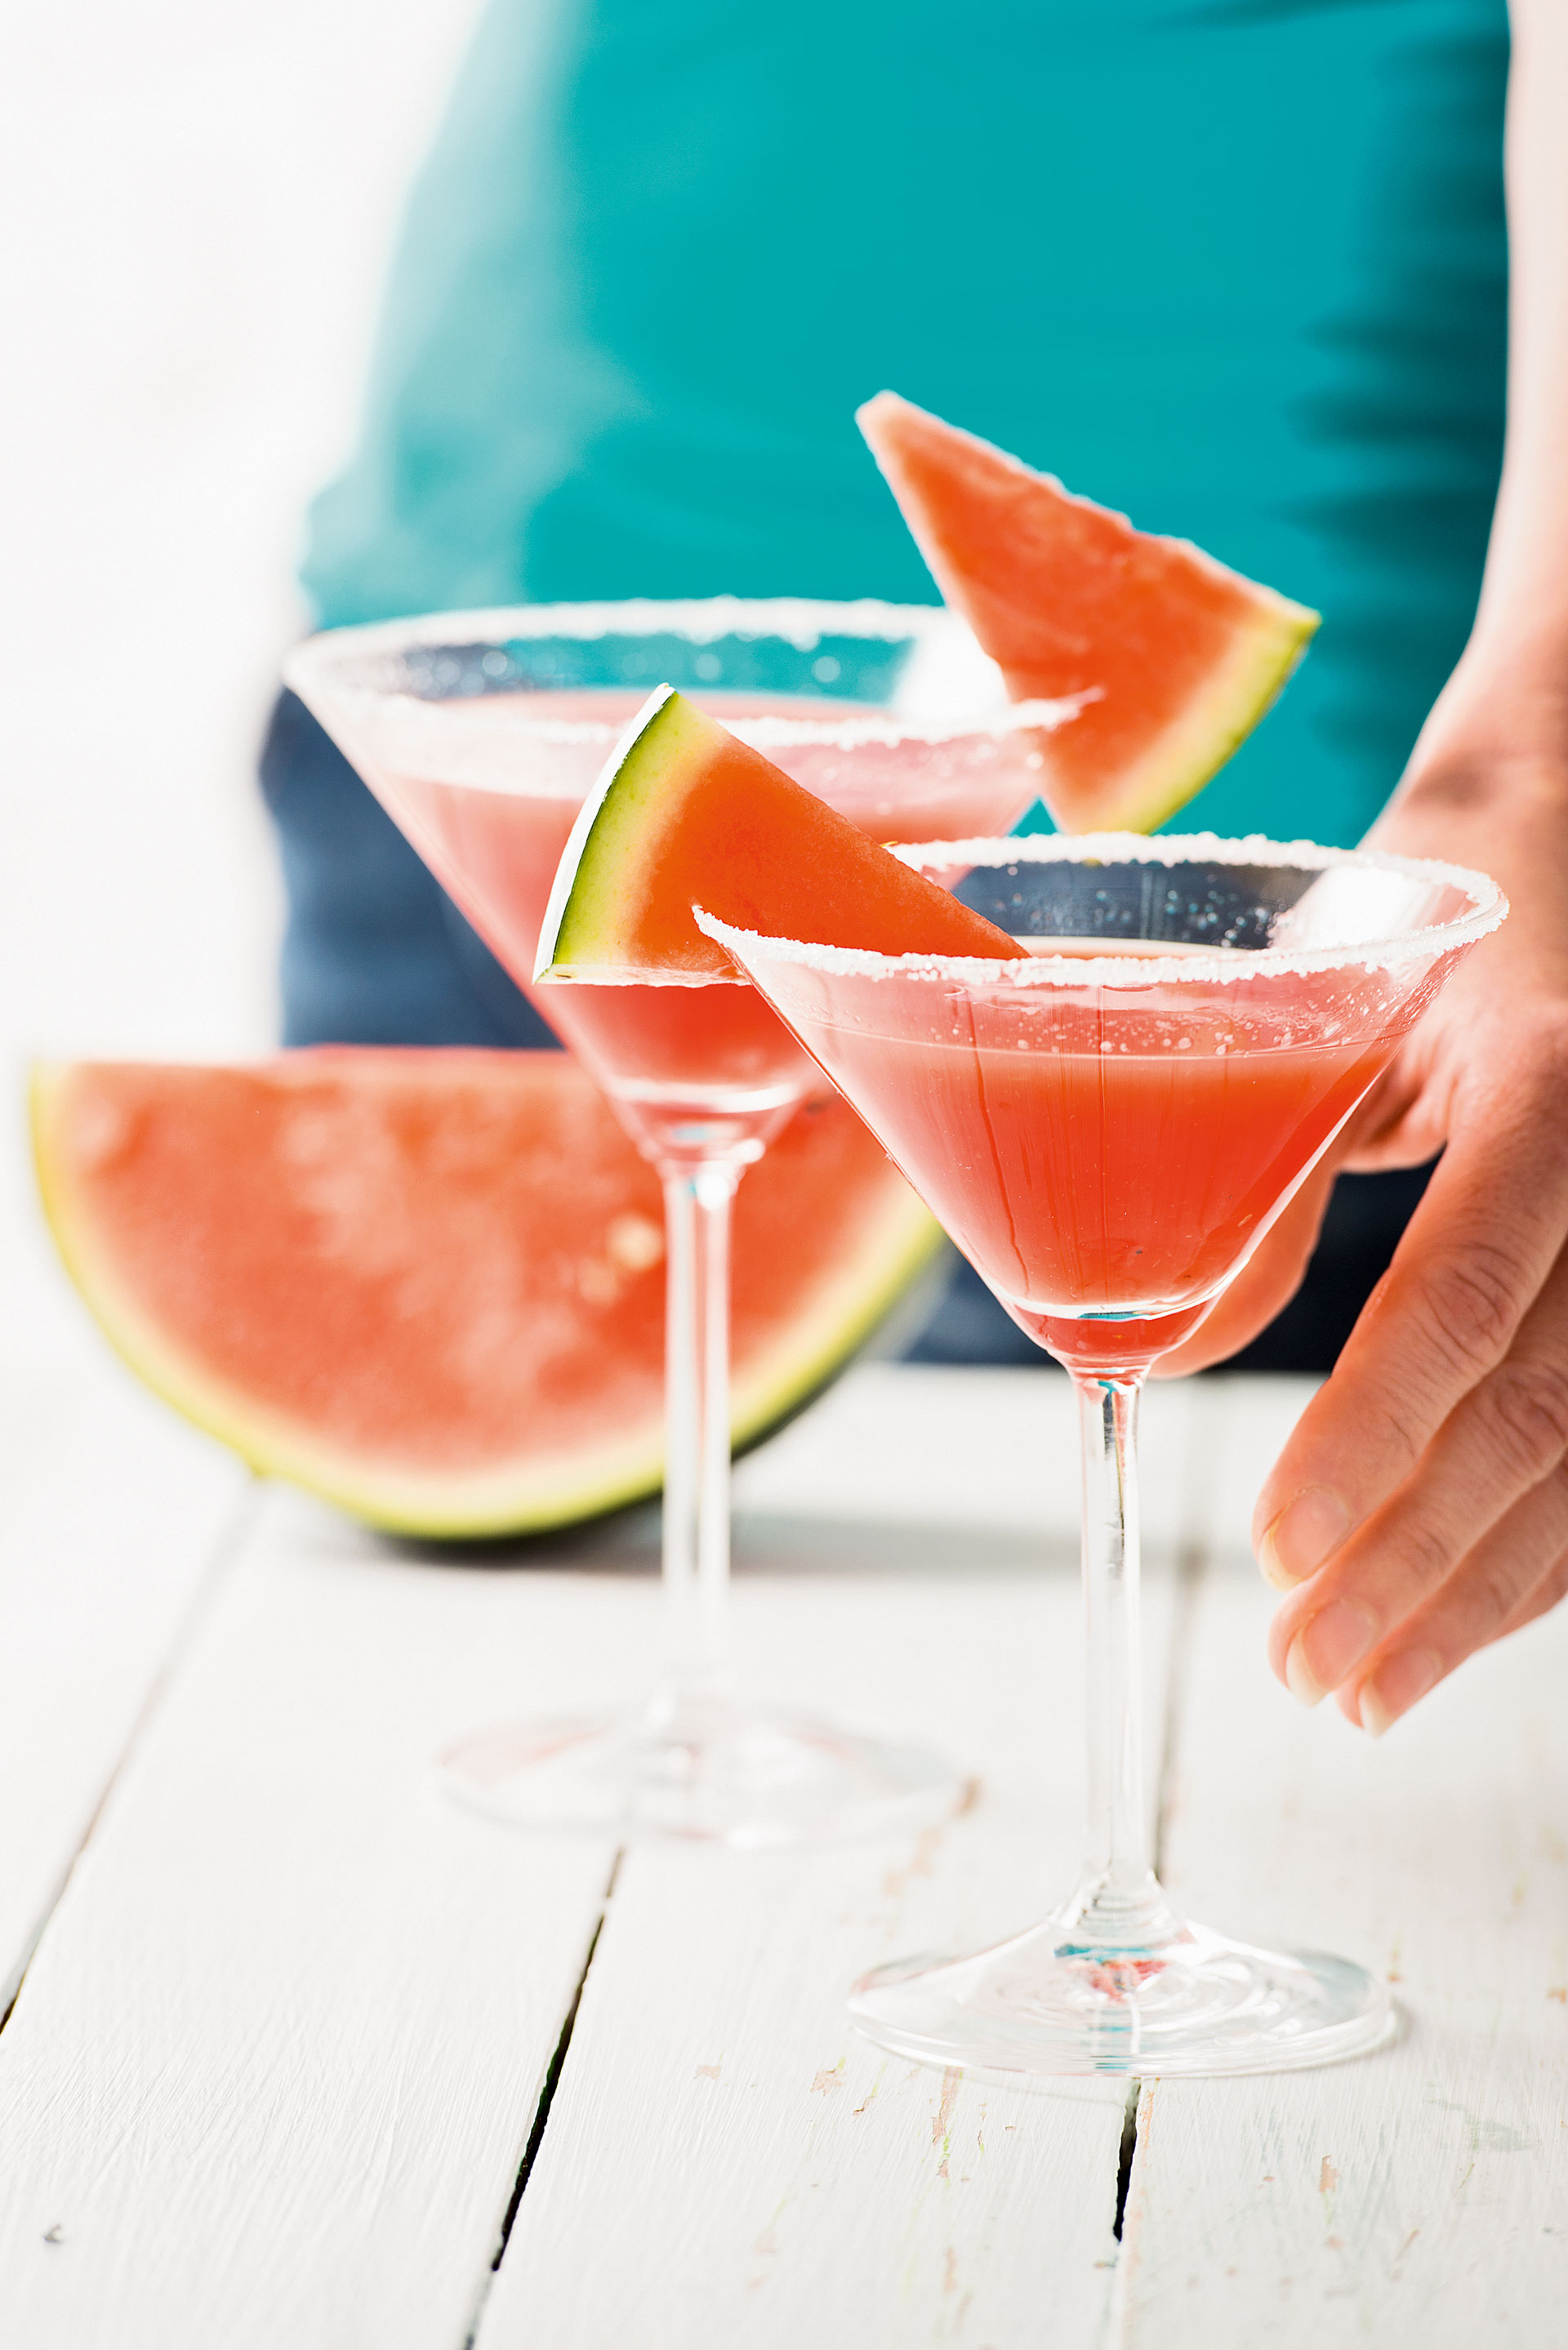 Margaritagläser gefüllt mit Wassermelonen-Cocktail und Zucker- oder Salzrand